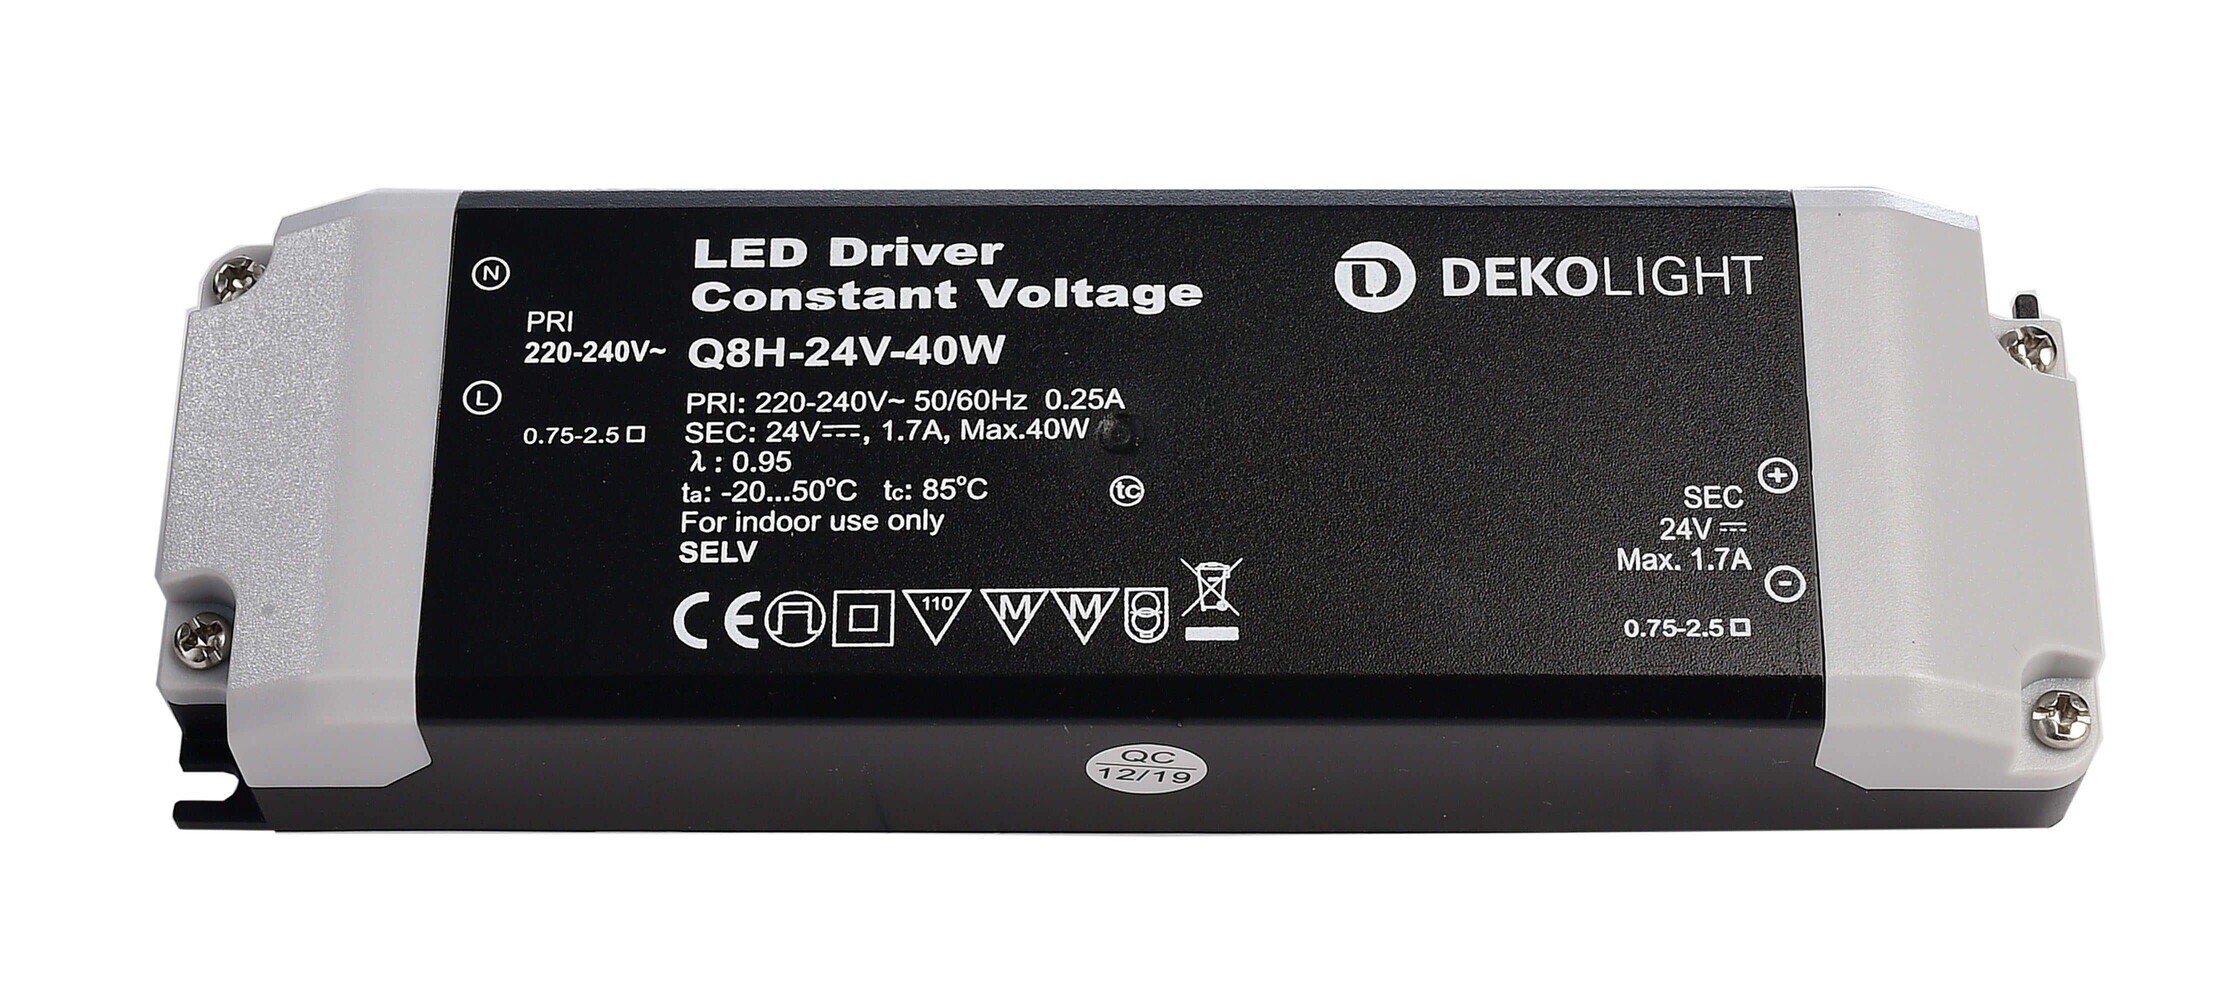 Hochwertiges LED Netzteil von der Marke Deko-Light